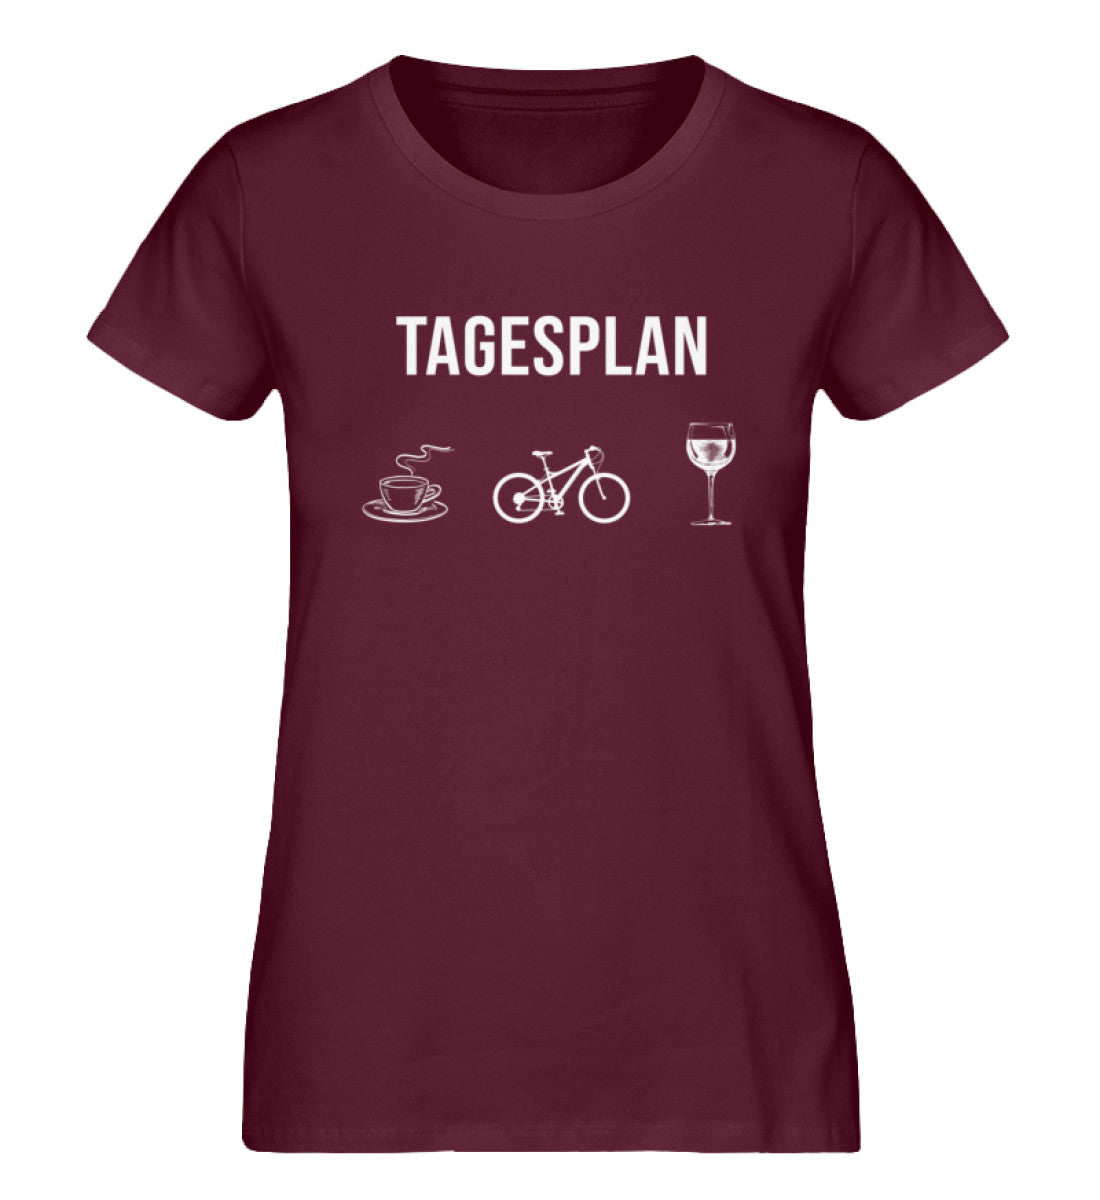 Tagesplan Kaffee, Fahrrad und Wein - Damen Organic T-Shirt fahrrad mountainbike Weinrot